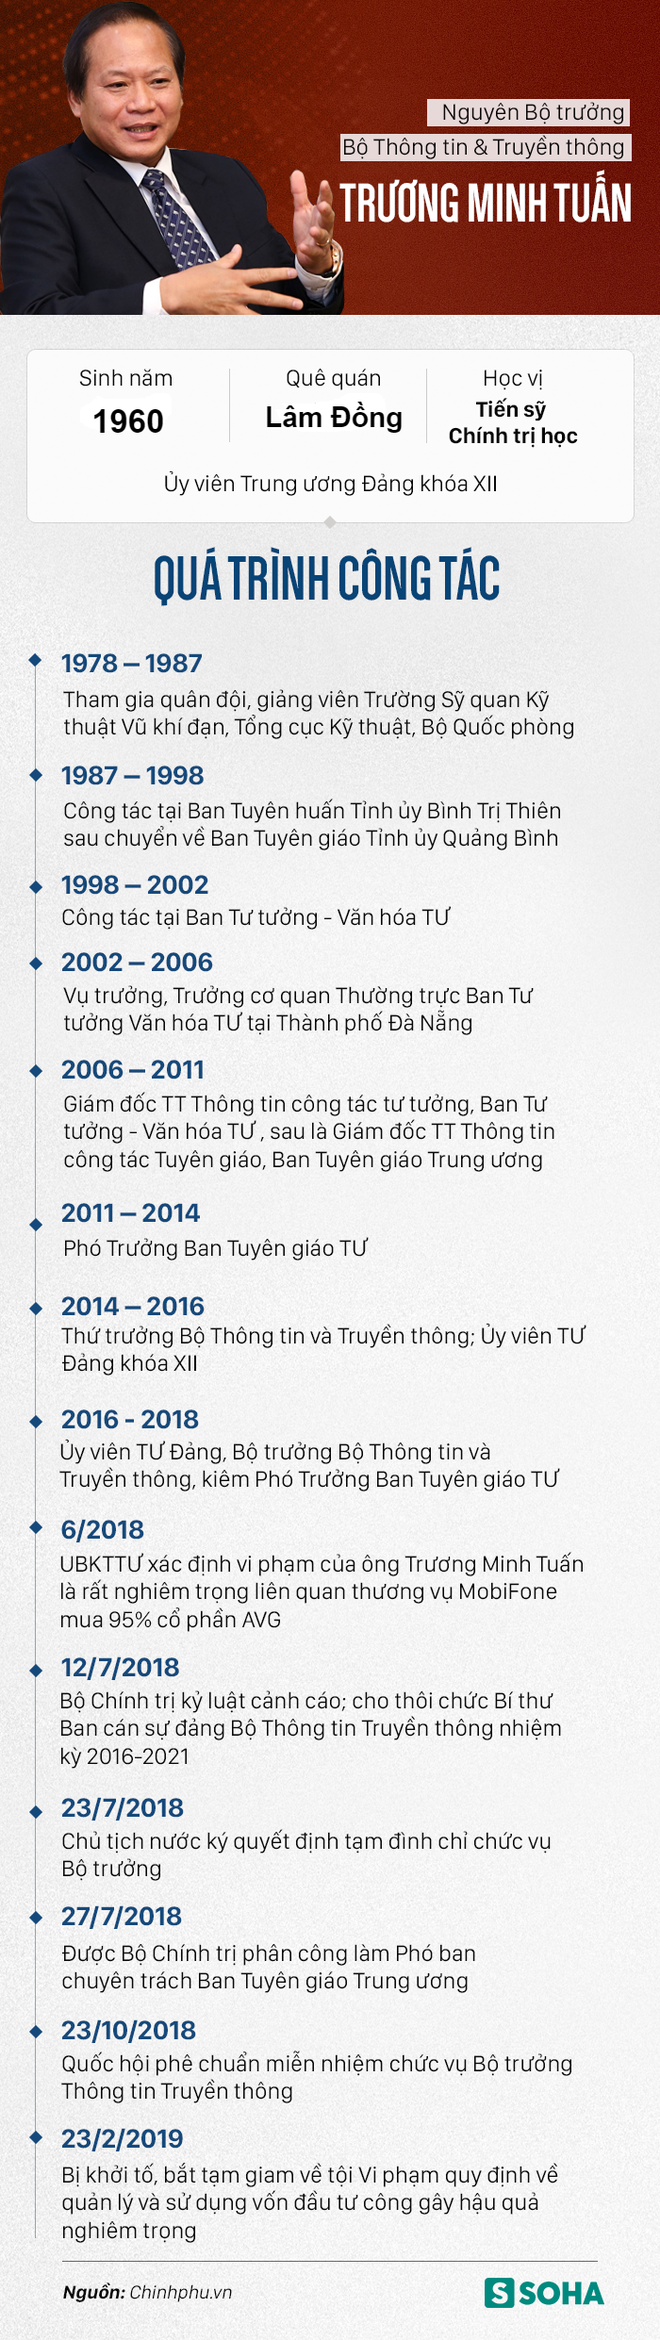 Sự nghiệp của hai cựu Bộ trưởng Nguyễn Bắc Son, Trương Minh Tuấn vừa bị bắt giam - Ảnh 2.